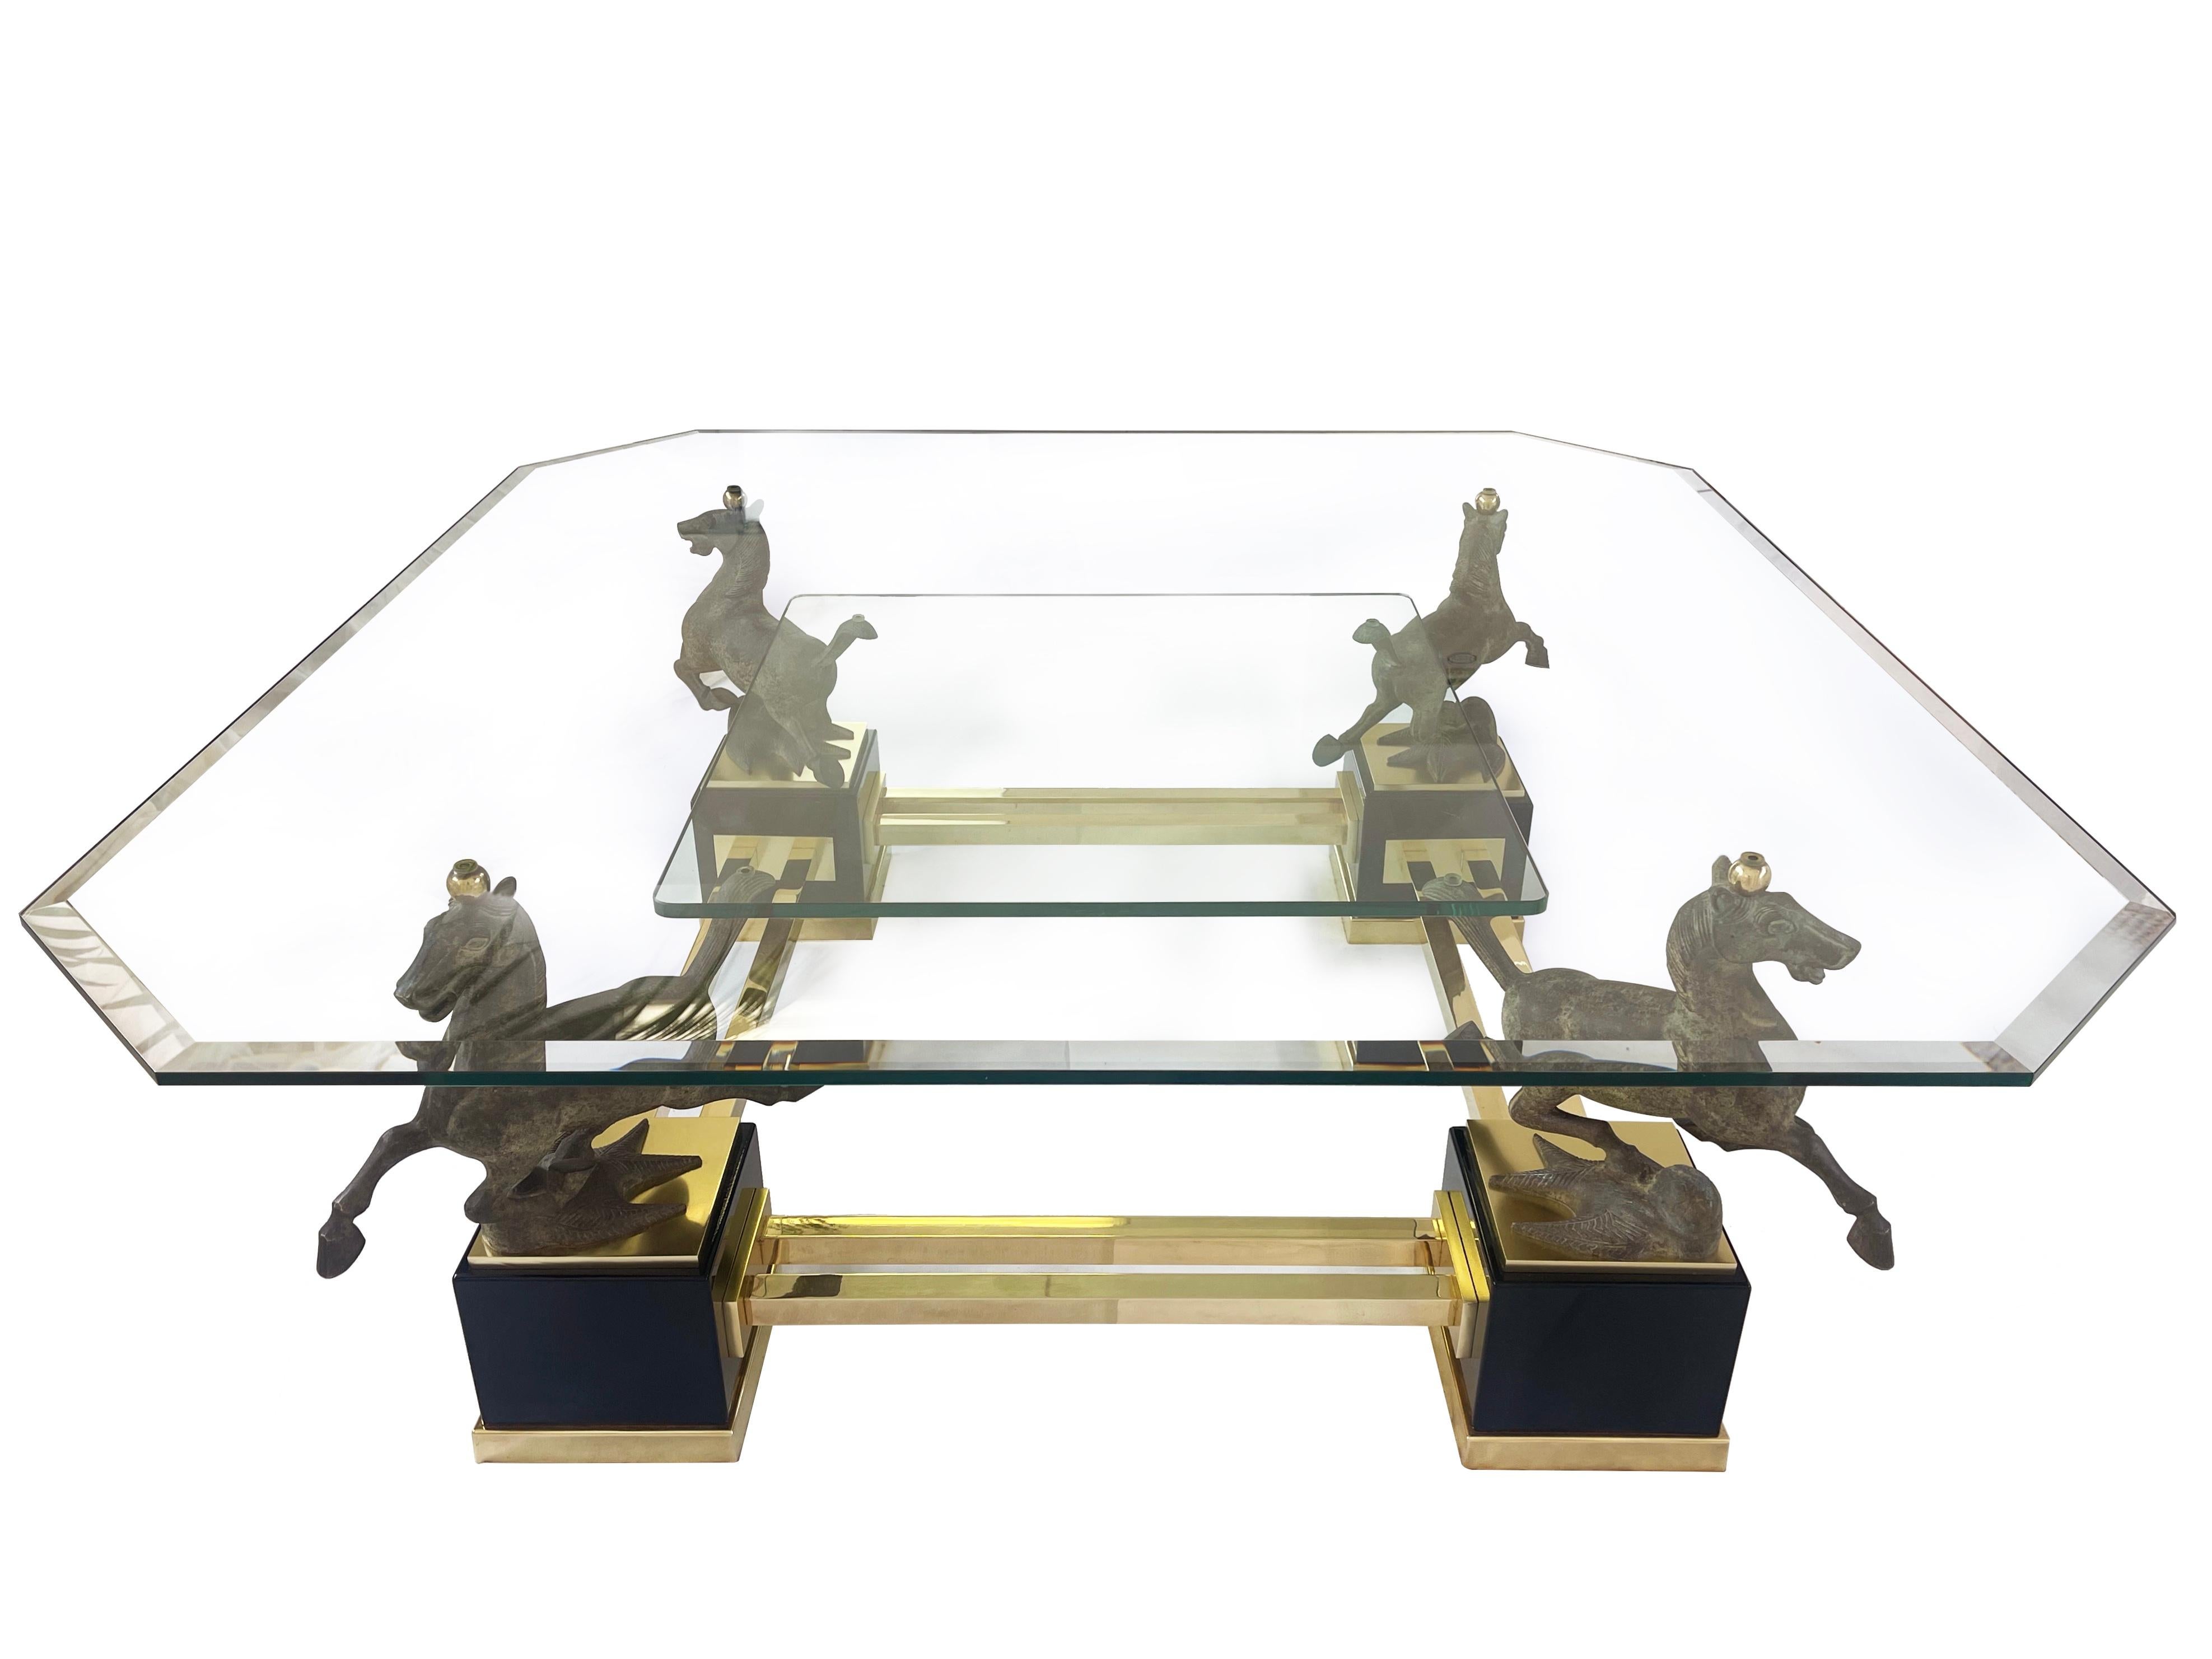 Sehr großer & beeindruckender quadratischer Couchtisch mit vier ''fliegenden Pferden von Gansu'' aus massiver Bronze.
Die Tischplatte ist achteckig und aus abgeschrägtem Glas - und ich nehme an, dass sie original ist.
Die untere Glasplatte ist